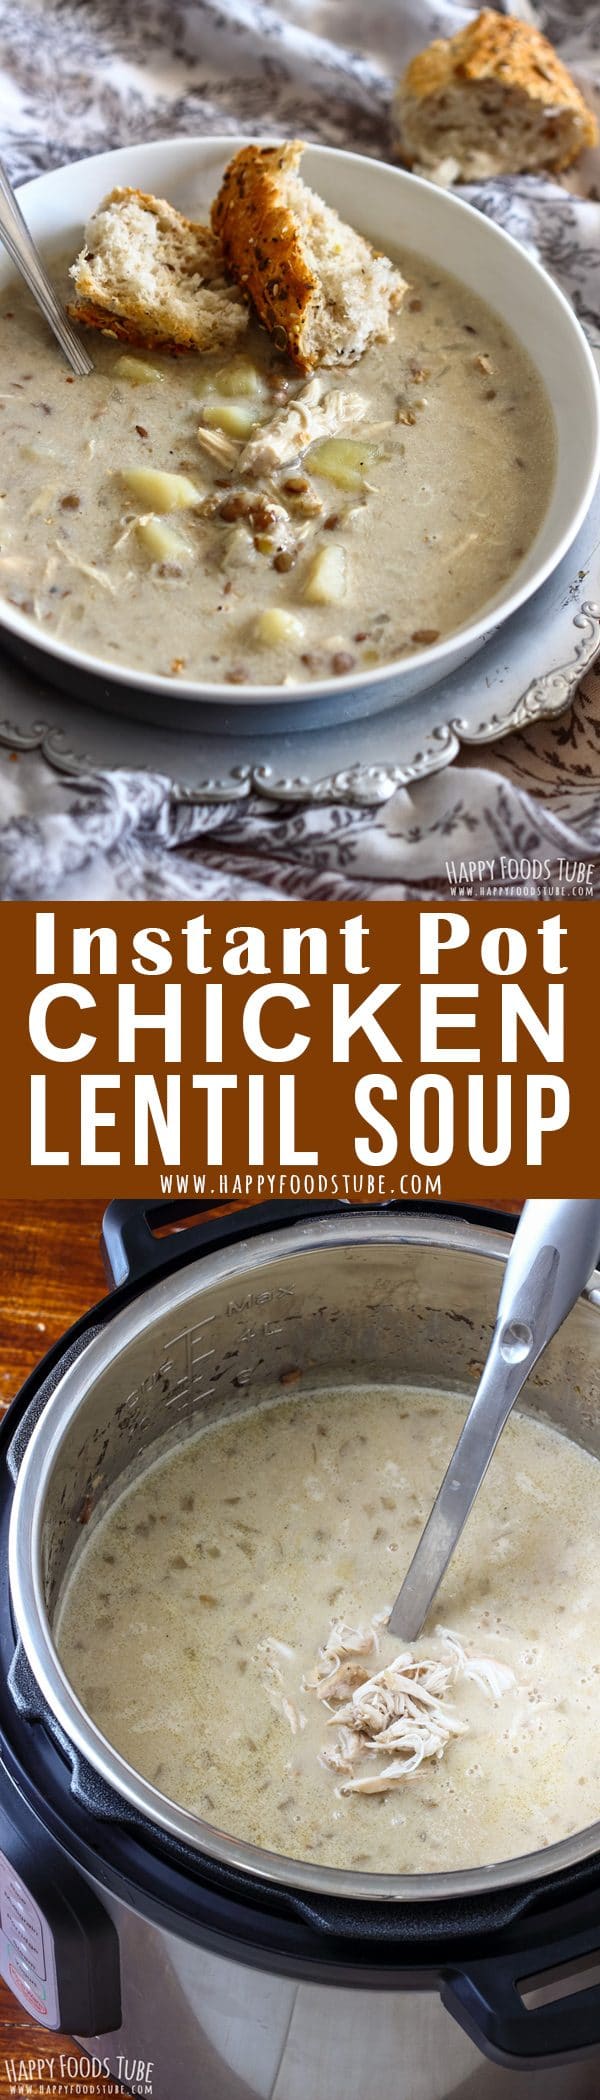 Instant Pot Chicken Lentil Soup Pinterest Collage